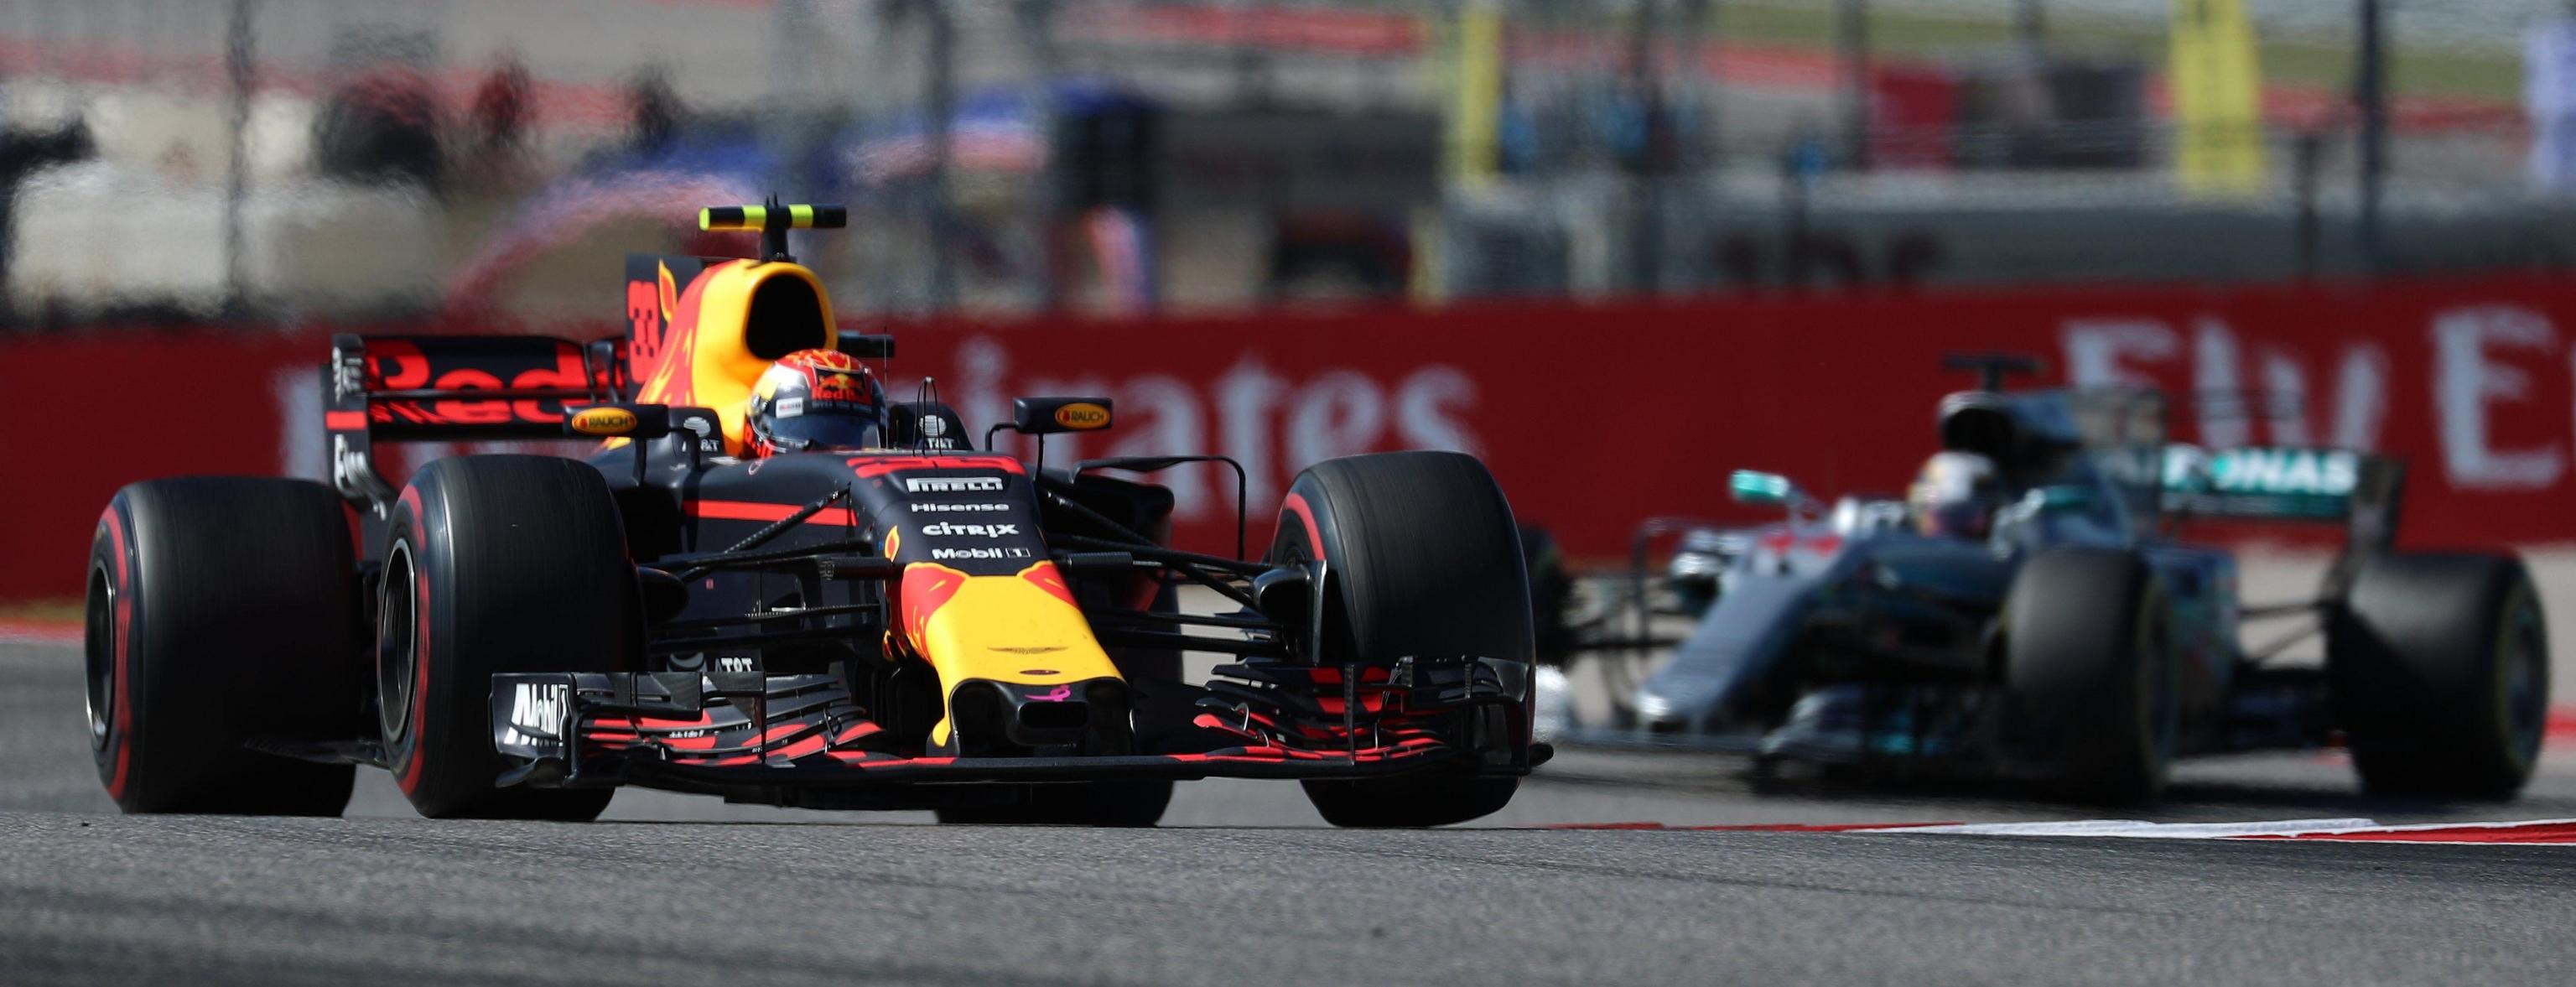 L'olandese Max Verstappen, Red Bull, è il protagonista di un sorpasso mozzafiato sul pilota Ferrari Raikkonen, immortalato durante la corsa